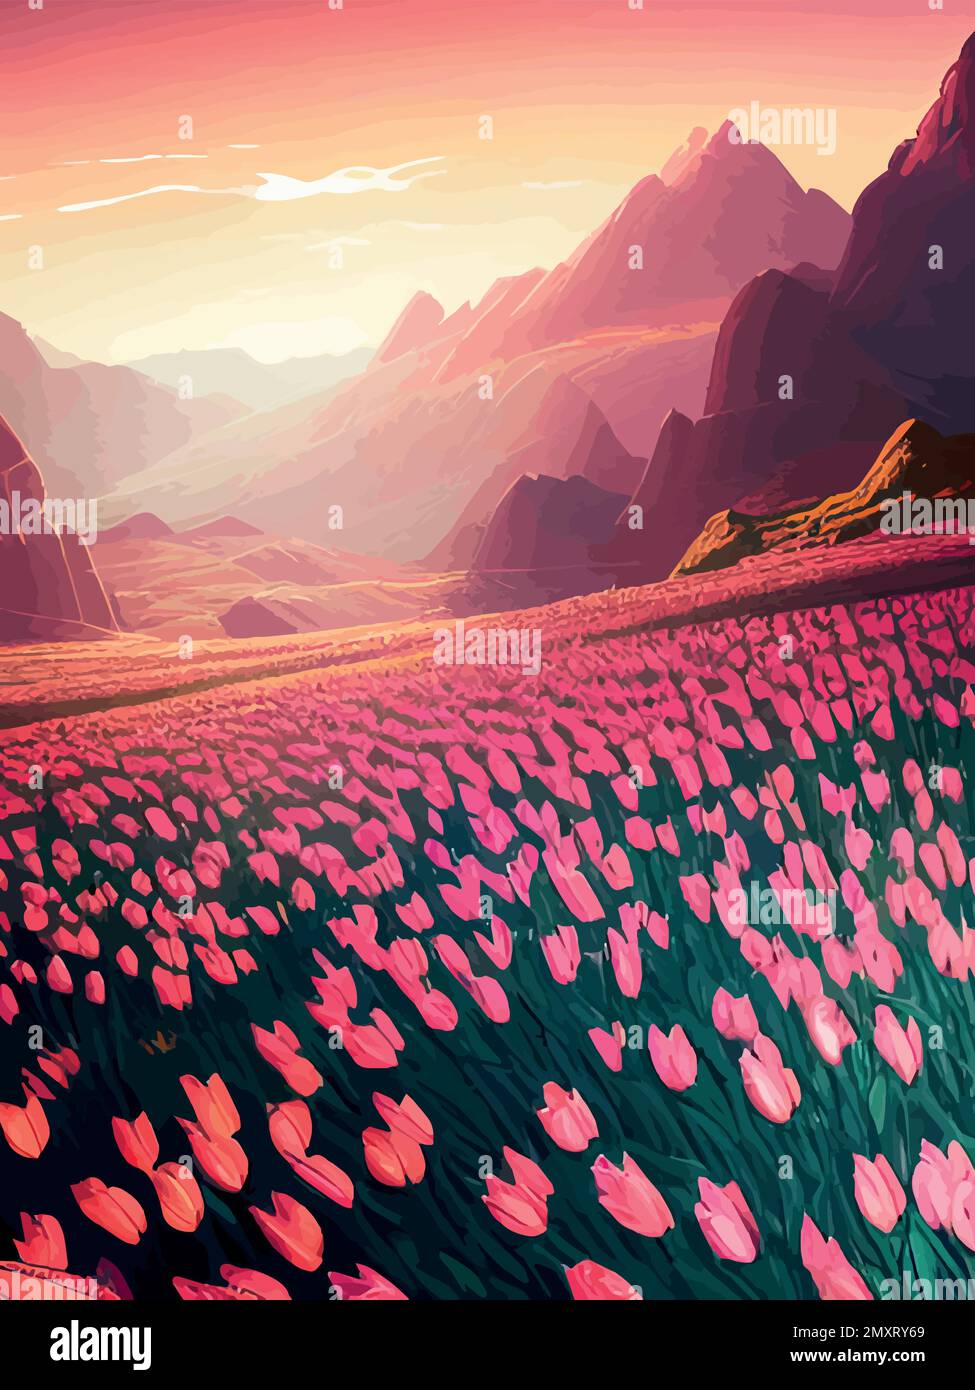 Vector de fondo de primavera. Paisaje holandés con campo de tulipanes,  árboles, colinas, montañas. Floral vertical paisaje cartel de dibujos  animados estilo dibujado a mano. Para carteles, anuncios, fondos de pantalla,  páginas